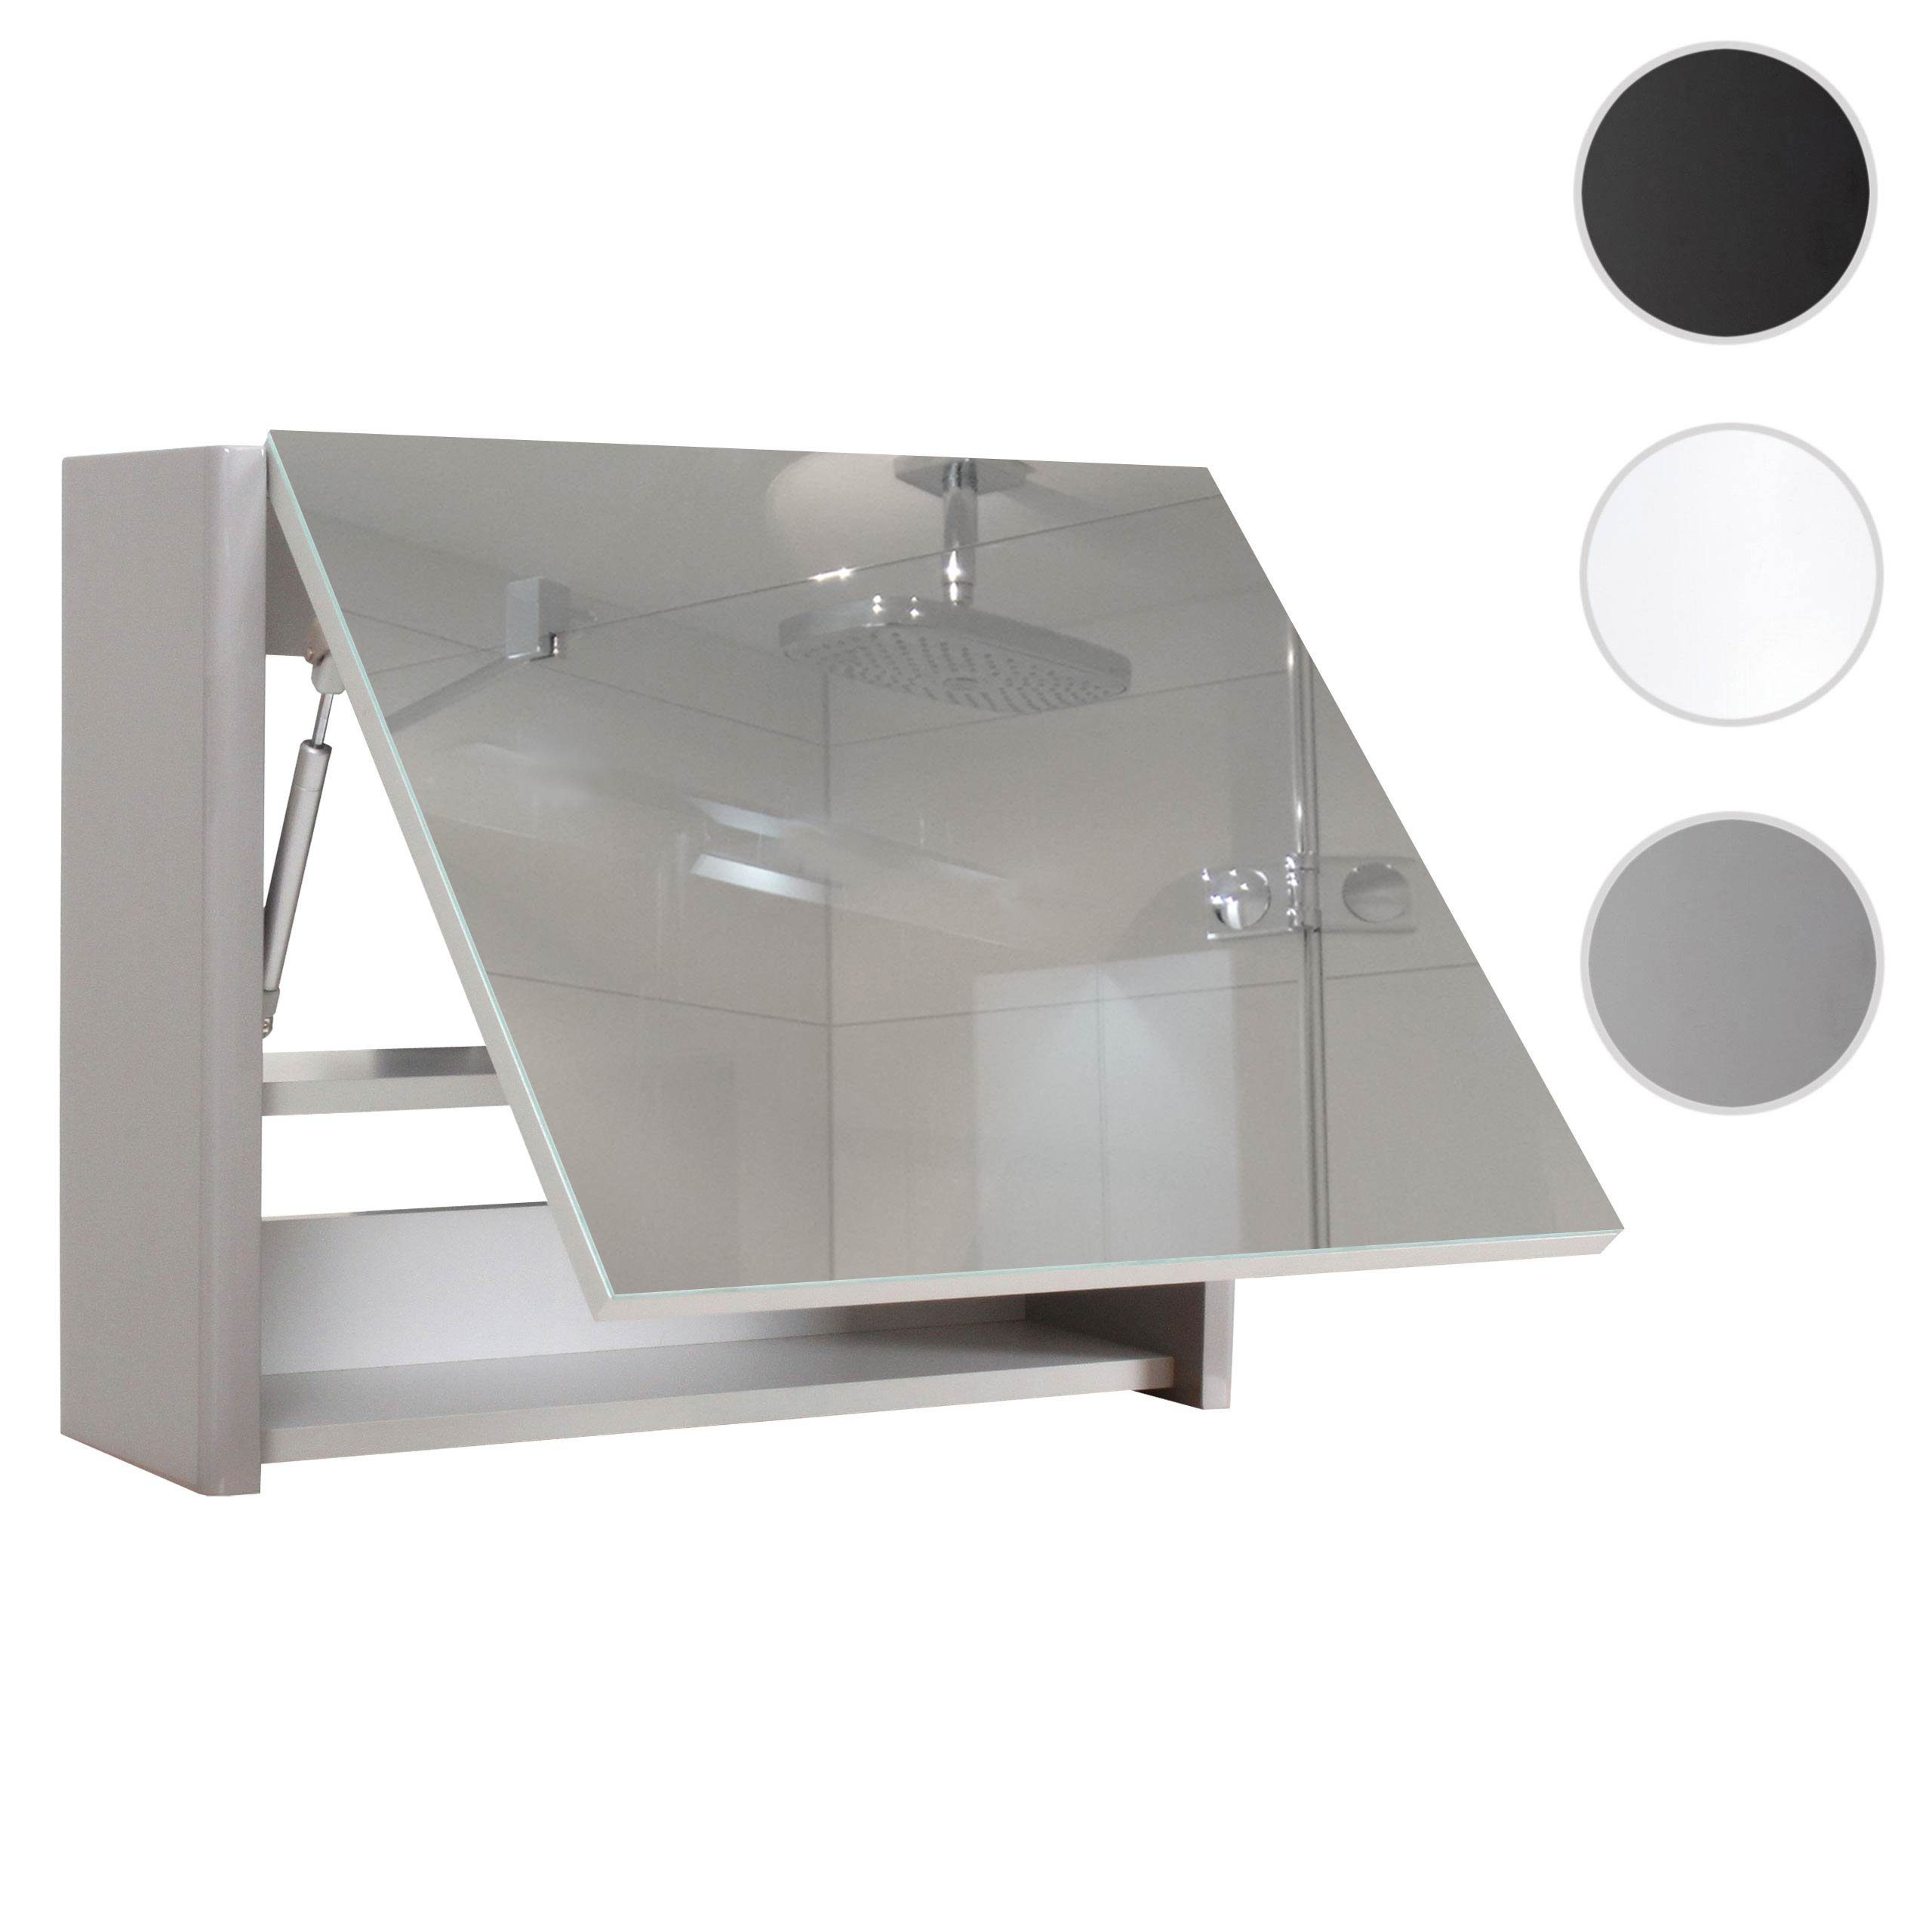 Inkl. Einlegeboden grau Hochglanz-Optik, MCW-B19-C Ablagefläche, grau Badezimmerspiegelschrank | mit MCW